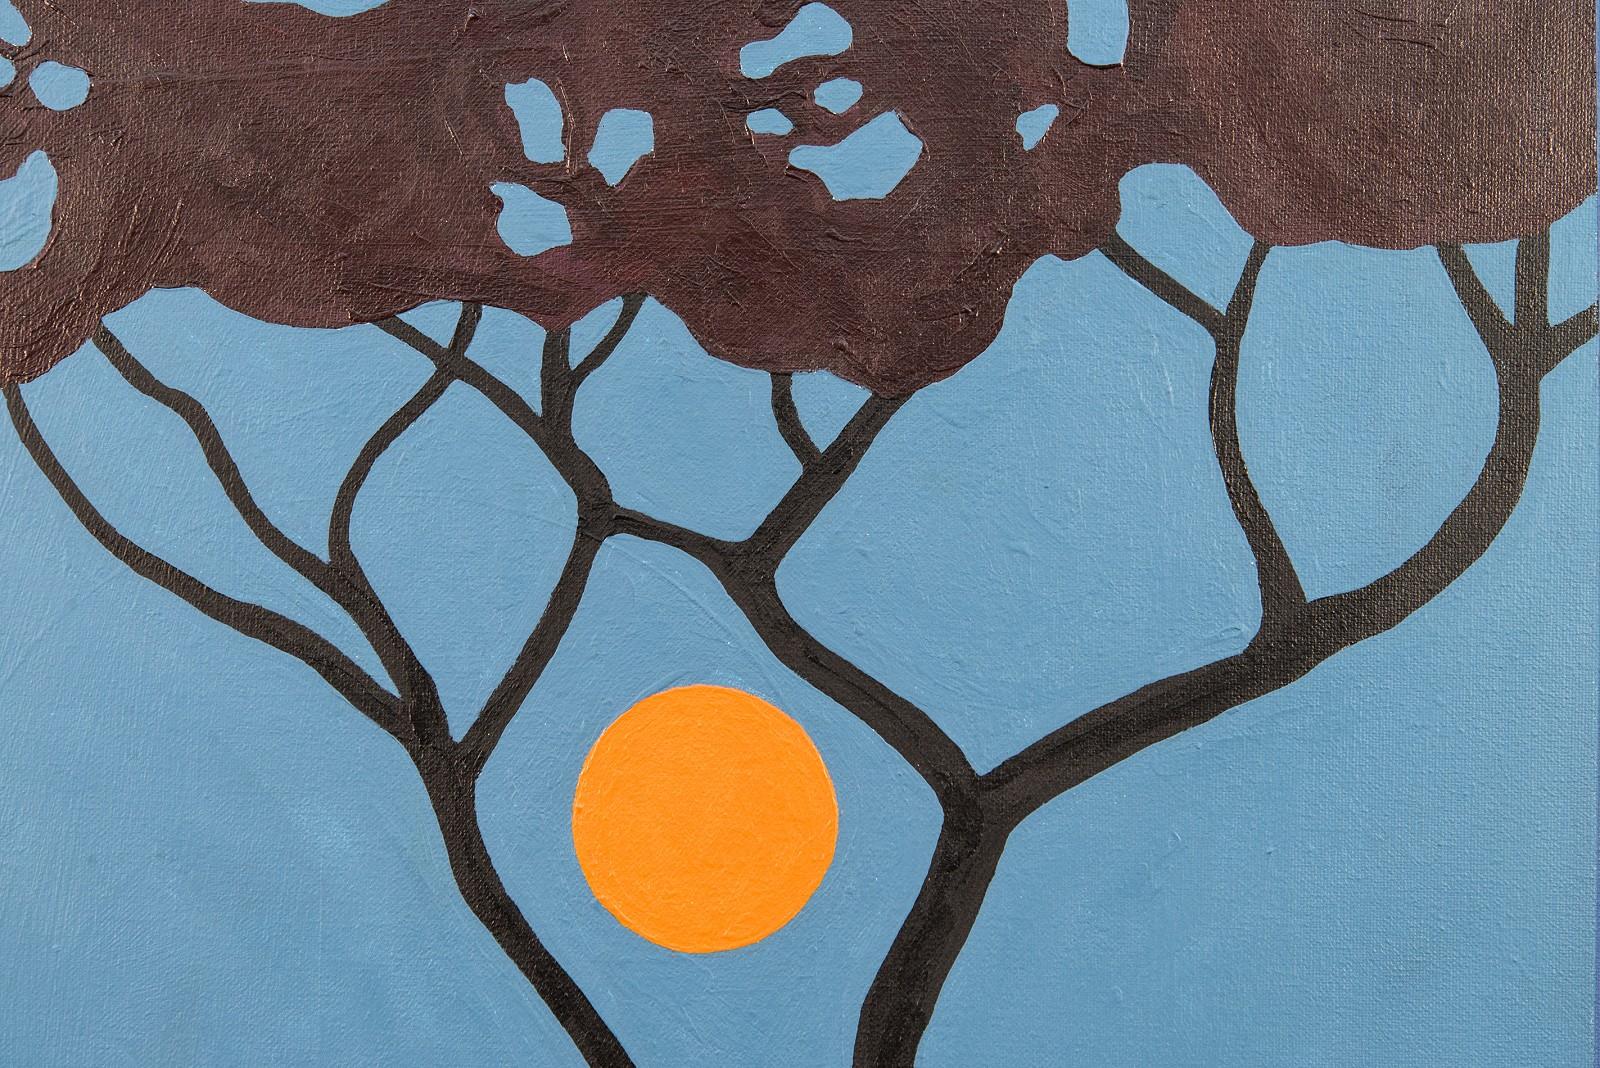 Sumach-Mond – blau, orange, Bäume, Mond, grafisch, Pop-Art, Landschaft, Acryl (Grau), Still-Life Painting, von Charles Pachter